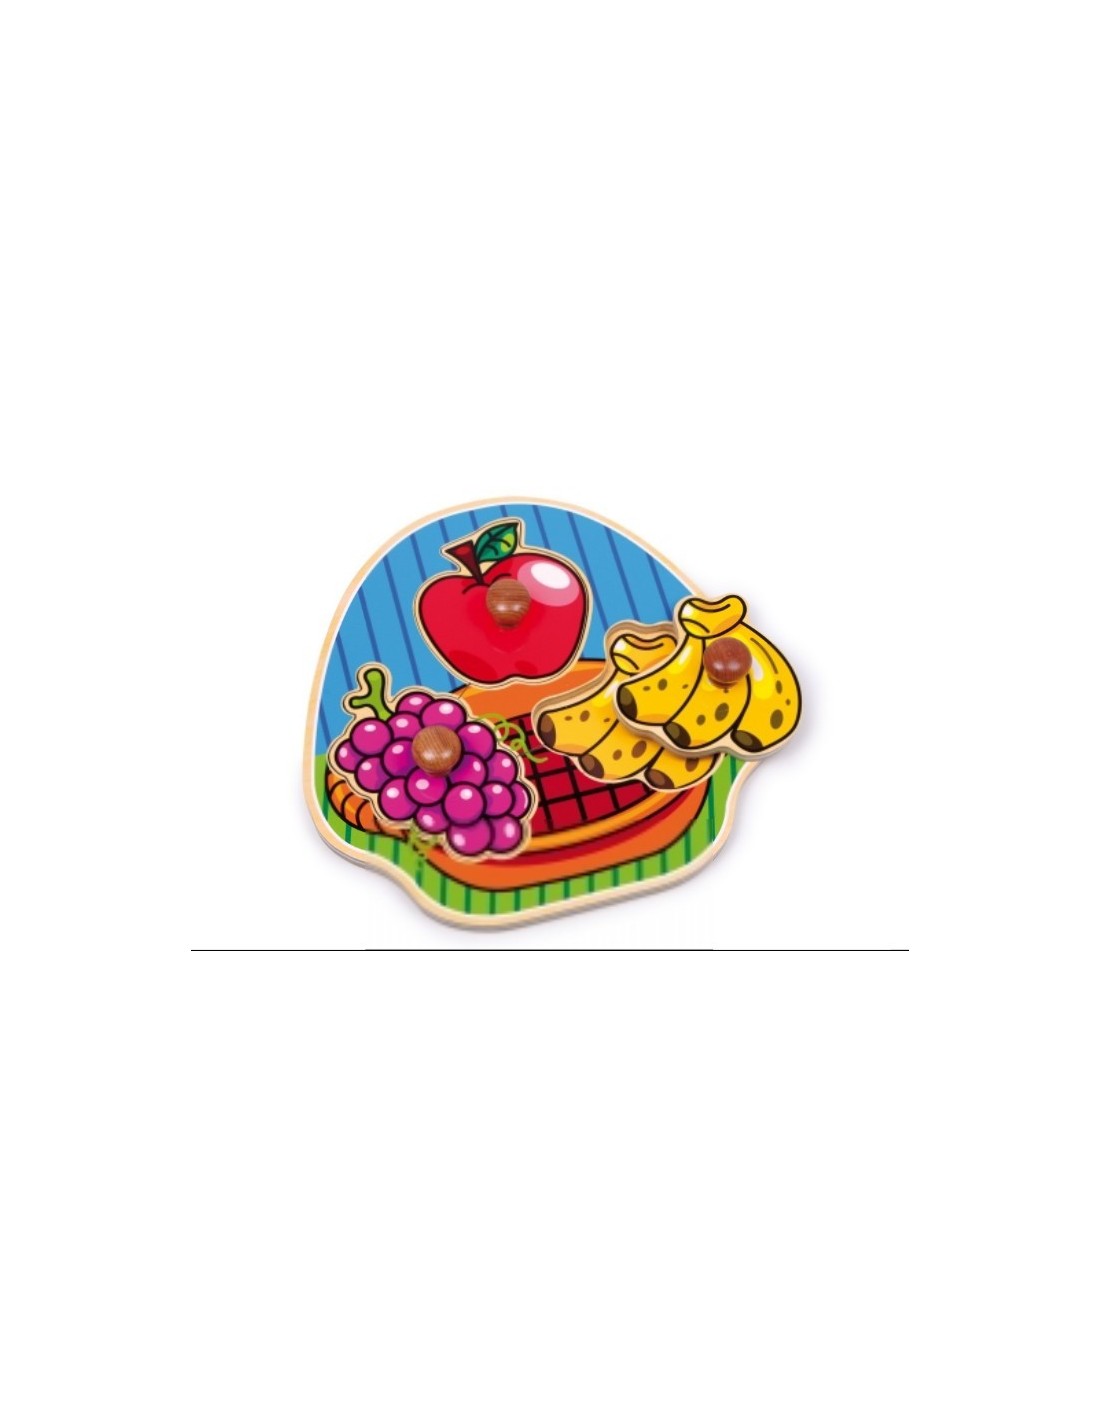 Puzle encaixable amb figures grans de fruites de Fusta Puzle per a infant joc clàssic.